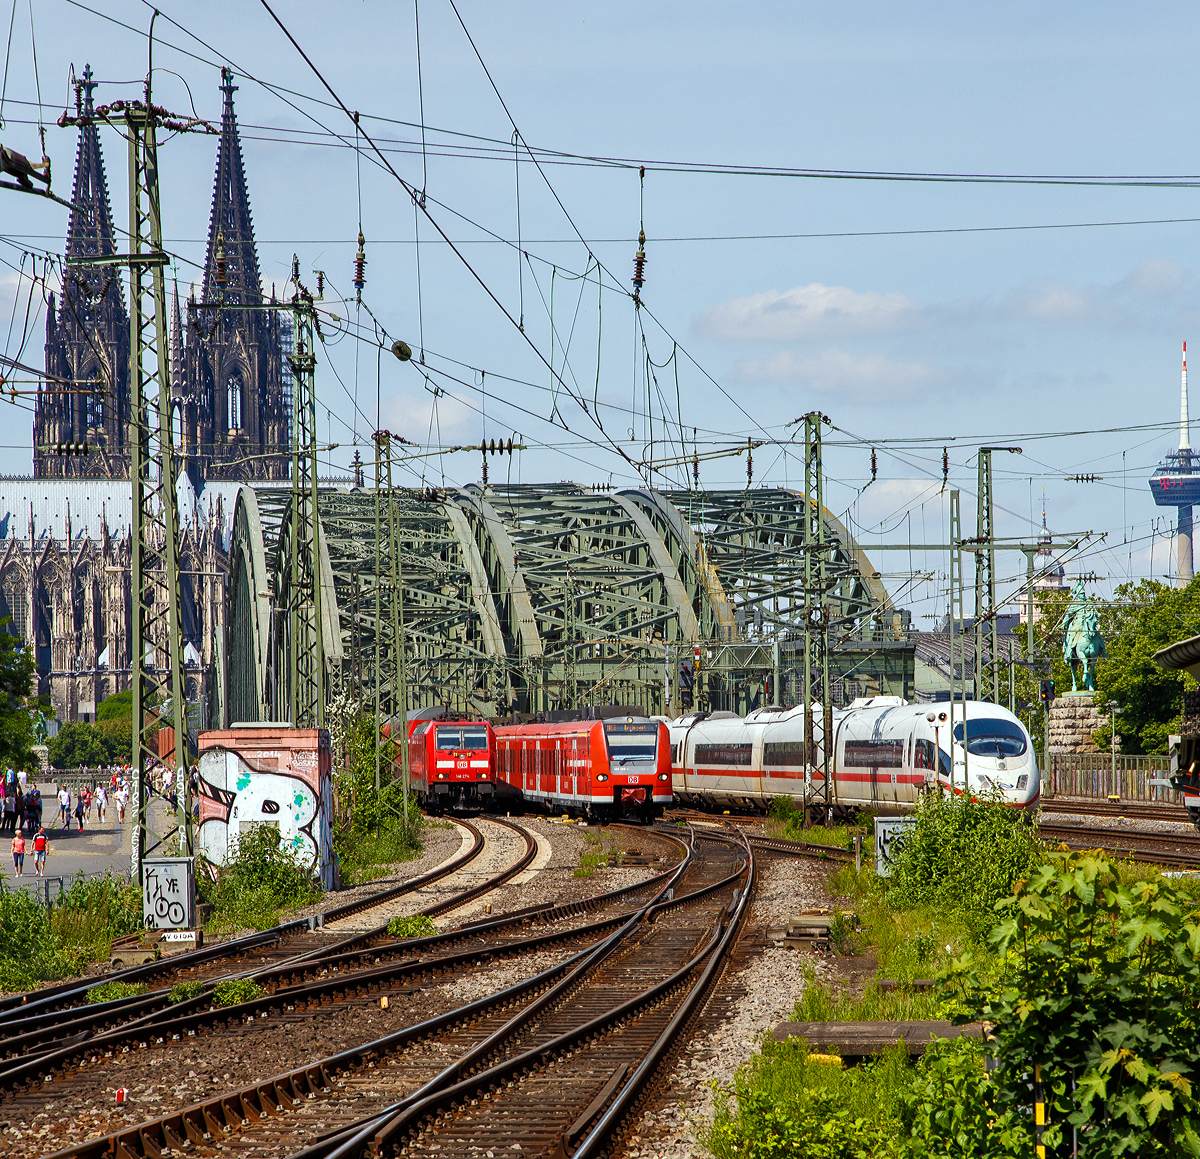 
Blick vom Bahnhof Köln Messe/Deutz am 01.06.2019 auf die Hohenzollernbrücke, dahinter folgt sofort der Hauptbahnhof Köln mit der weltweit größten Bahnhofskapelle, dem Kölner Dom.

Von der Hohenzollernbrücke kommen gerade (von links nach rechts) die DB 146 274-6 mit dem RE 5 “Rhein-Express“  und der ET 425 098-1 als RE 8 “Rhein-Erft-Express“, sowie NS (Nederlandse Spoorwegen) ICE 3M Tz 4653  erreicht bald den  Hbf.

